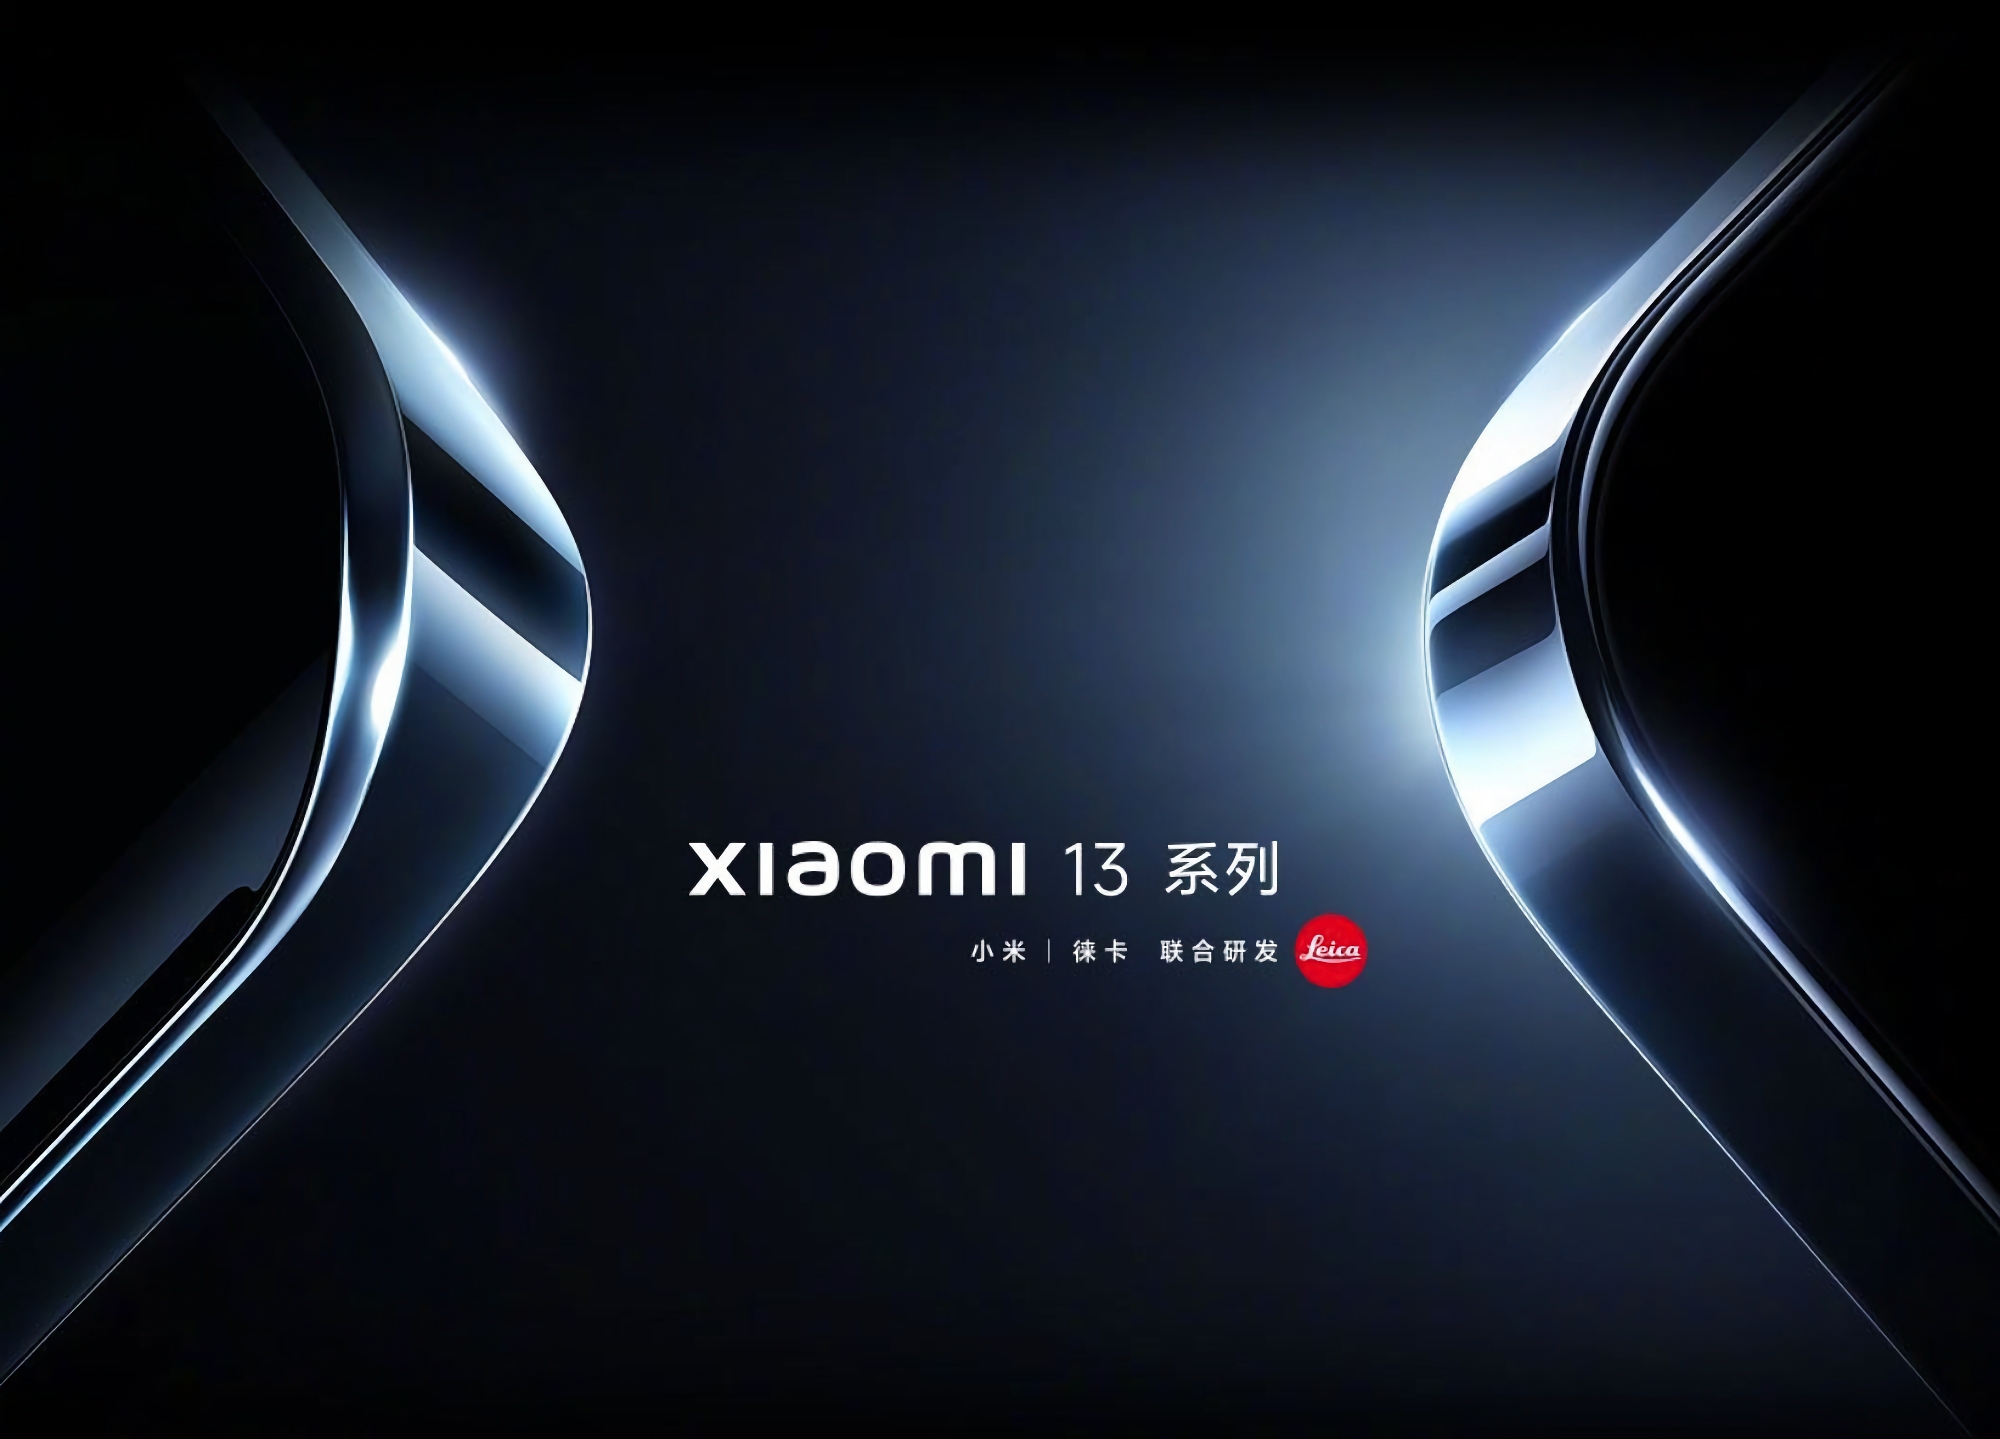 Xiaomi відклала презентацію флагманів Xiaomi 13 та Xiaomi 13 Pro через смерть колишнього лідера Китаю Цзян Цземіня